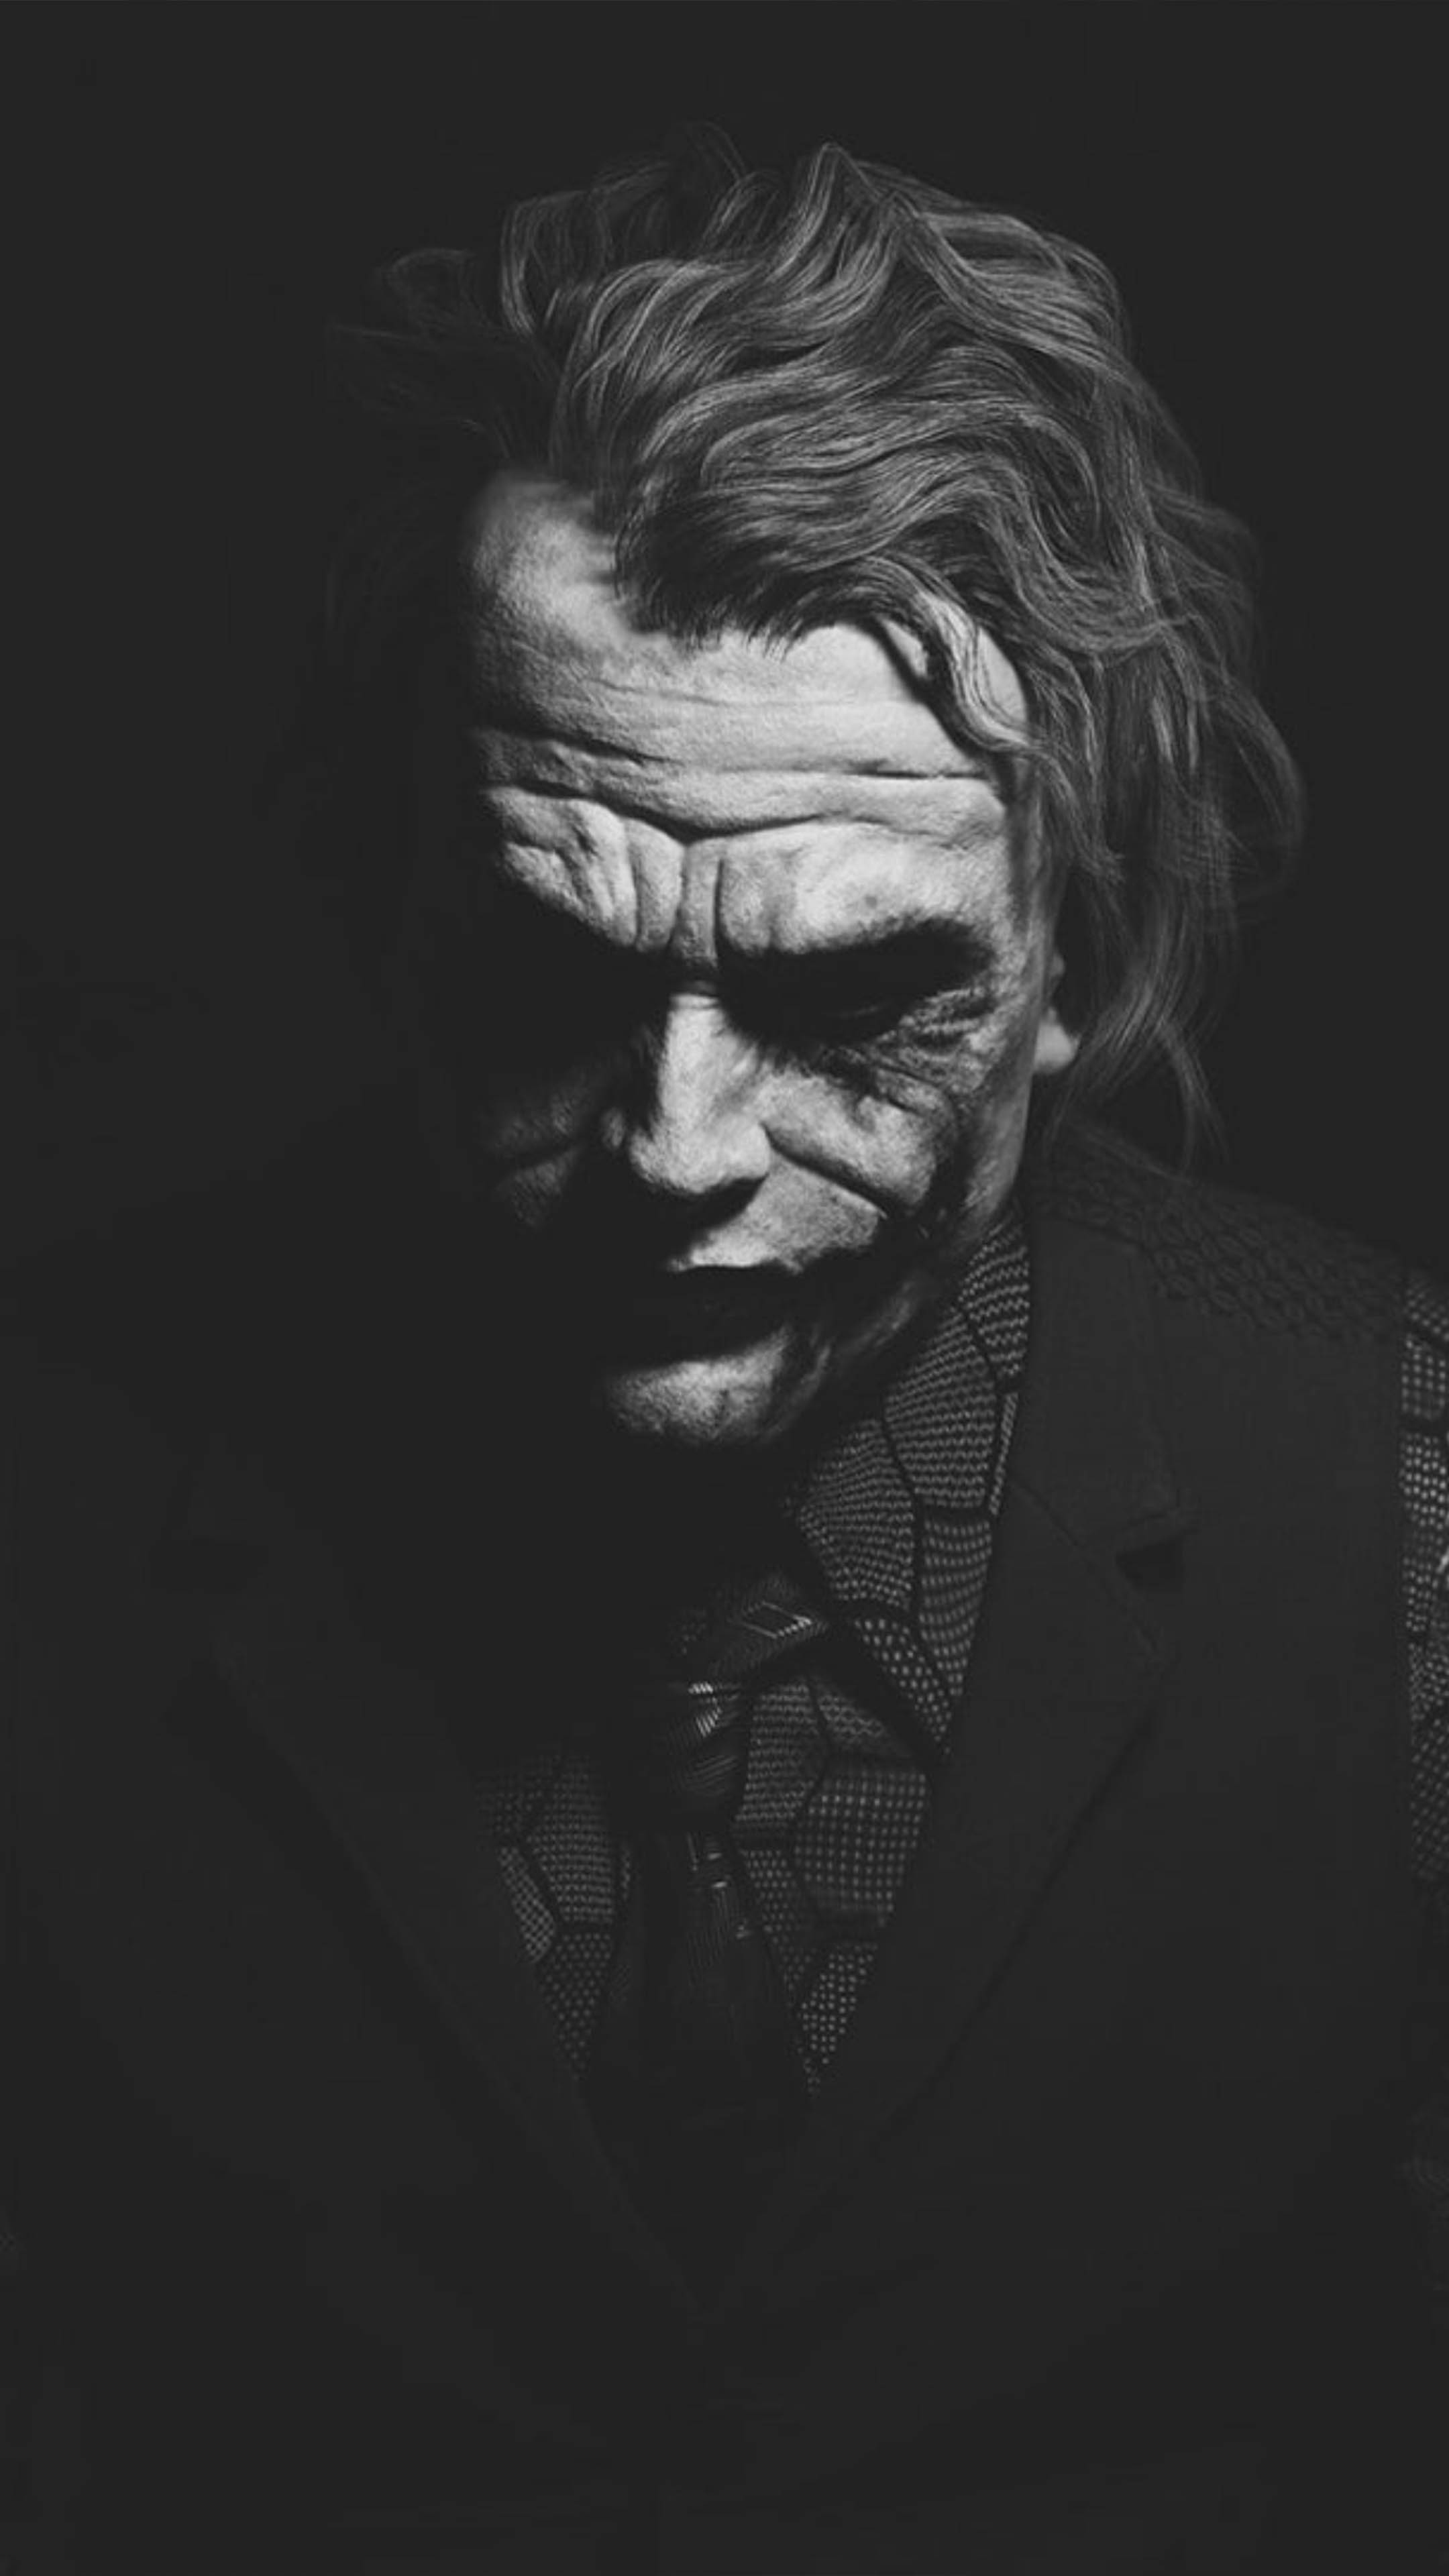 Heath Ledger Joker Black & White Artwork 4K Ultra HD Mobile Wallpaper